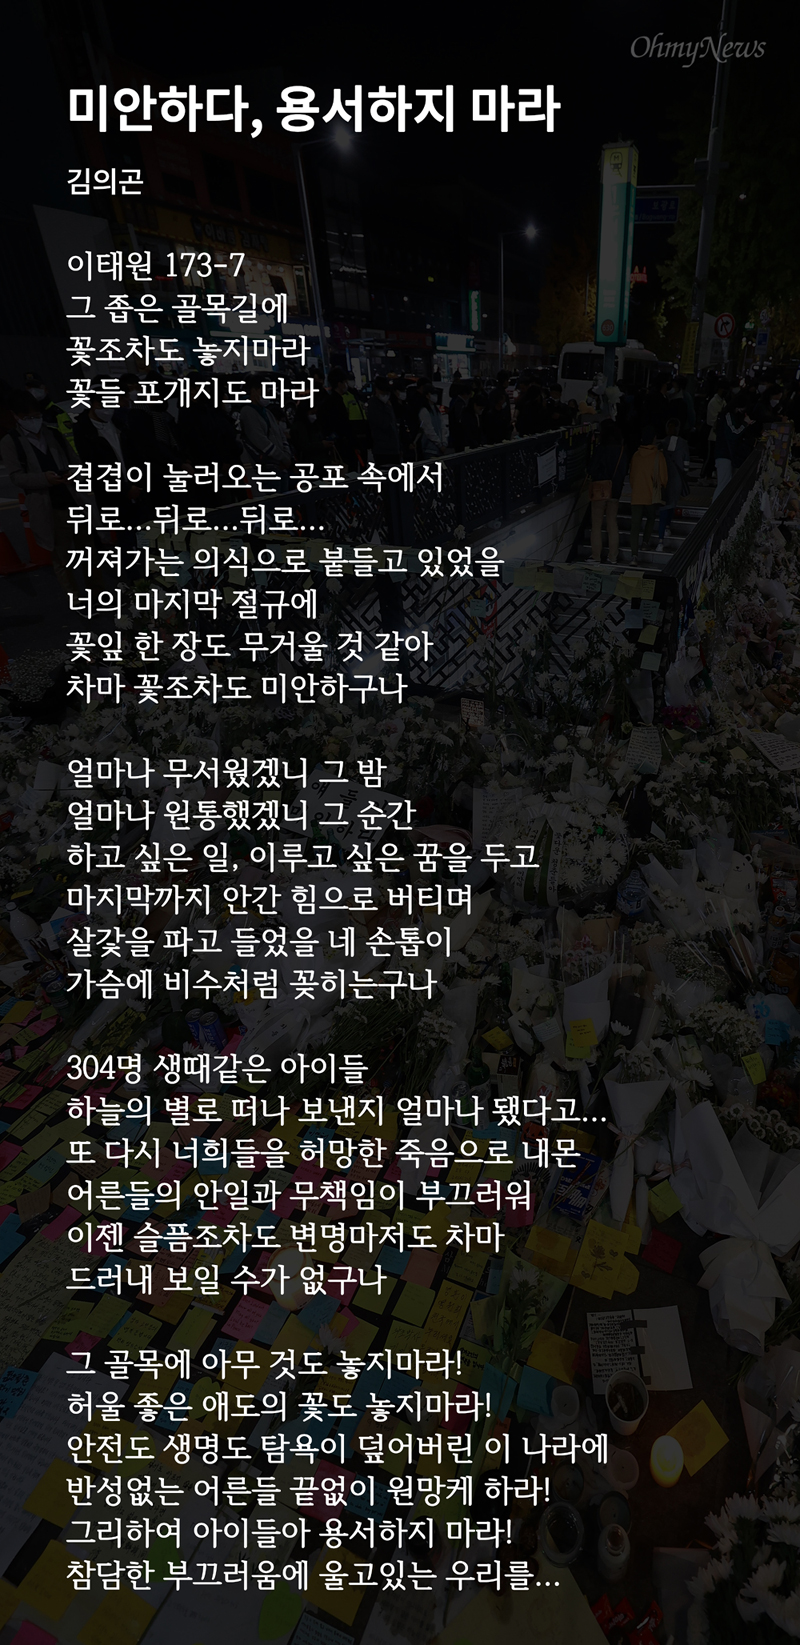  김의곤씨가 쓴 이태원 압사 참사 희생자들을 추모하는 시 <미안하다, 용서하지 마라>.